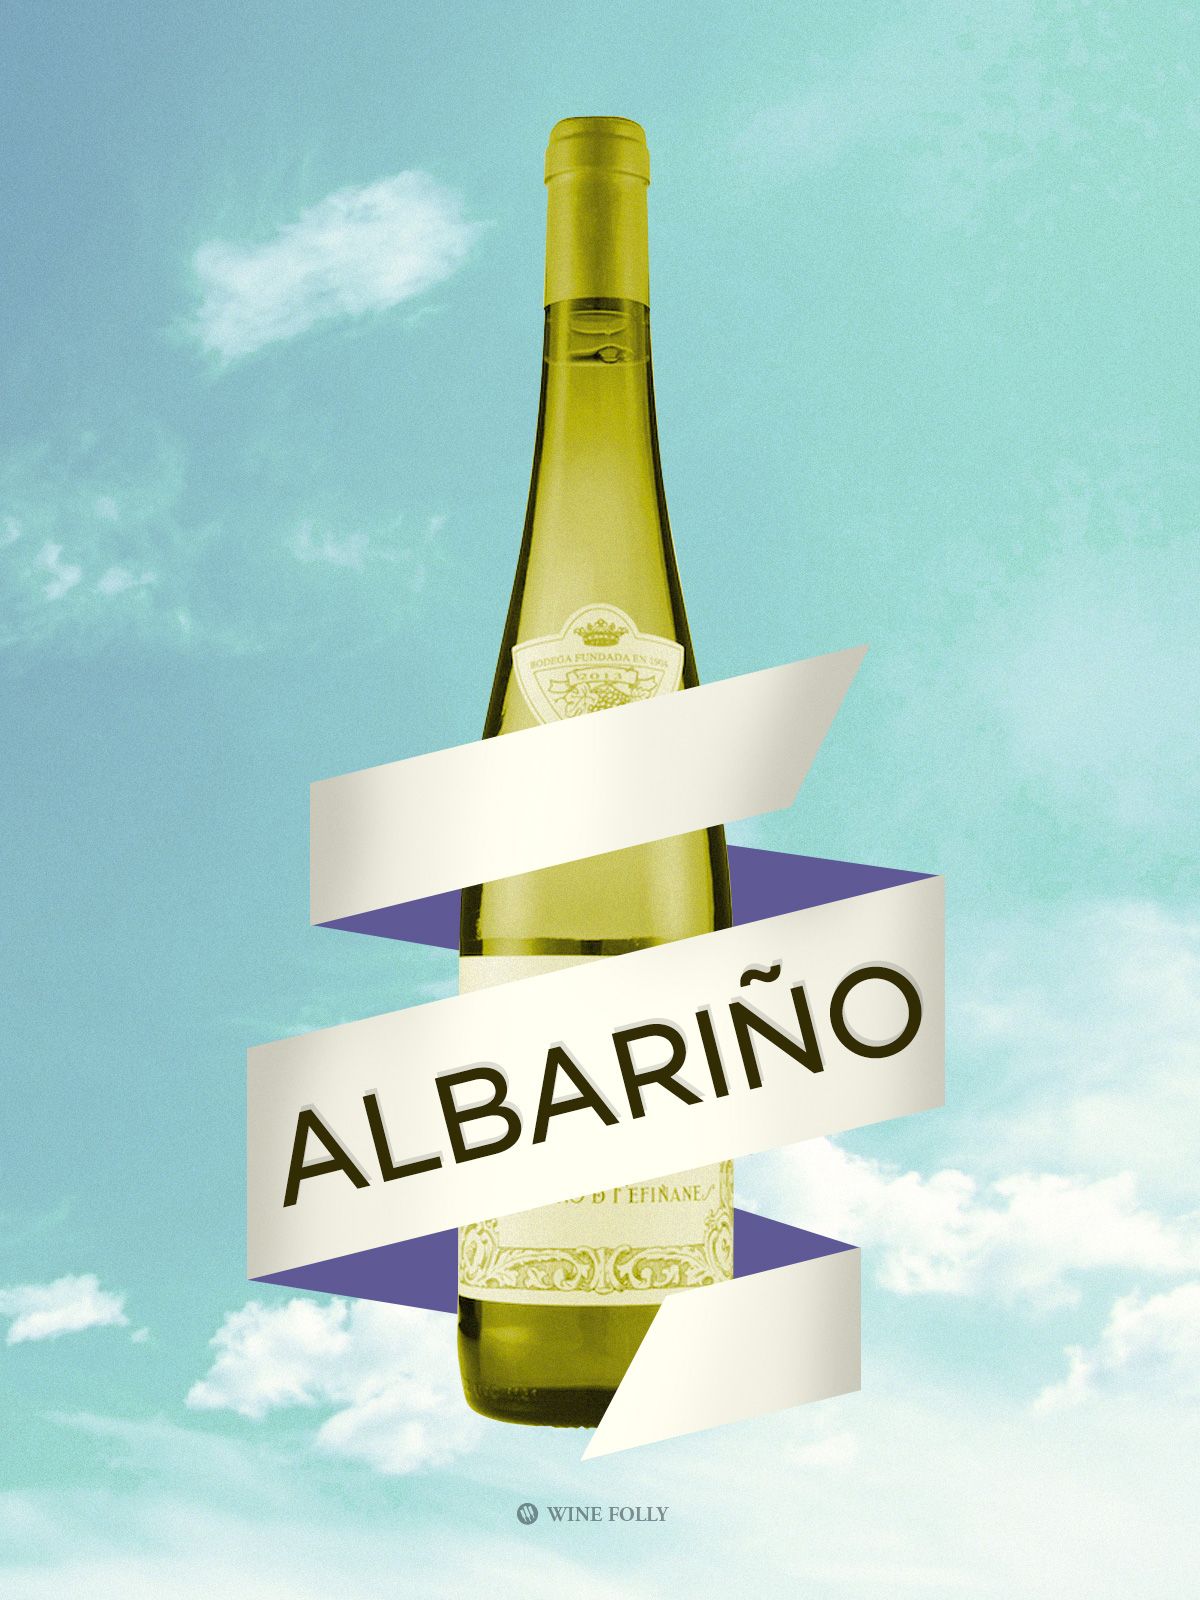 Vino Albariño iz Španije ilustracija Wine Folly